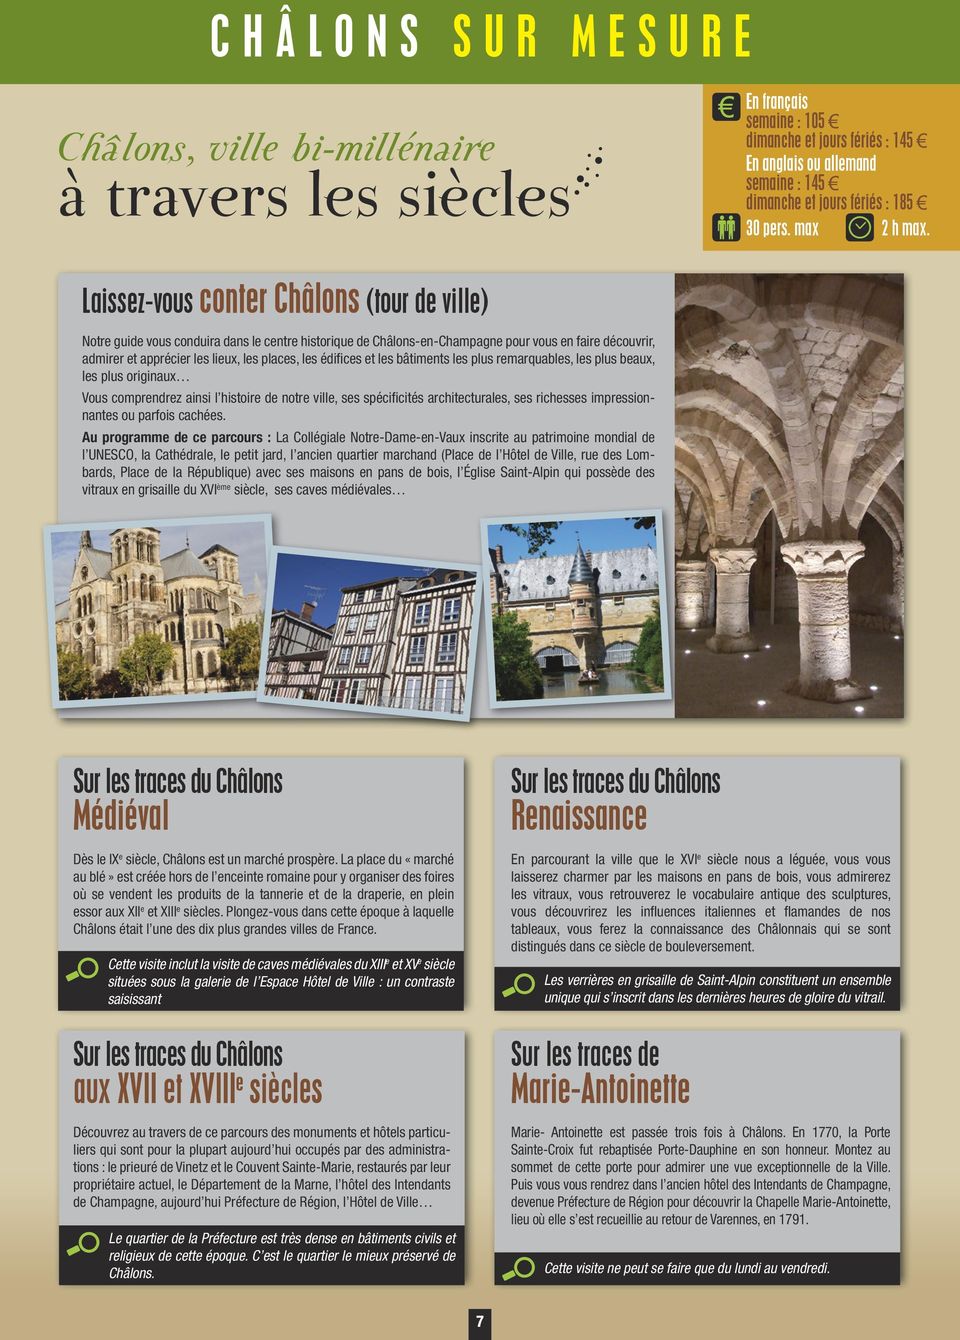 Laissez-vous conter Châlons (tour de ville) Notre guide vous conduira dans le centre historique de Châlons-en-Champagne pour vous en faire découvrir, admirer et apprécier les lieux, les places, les